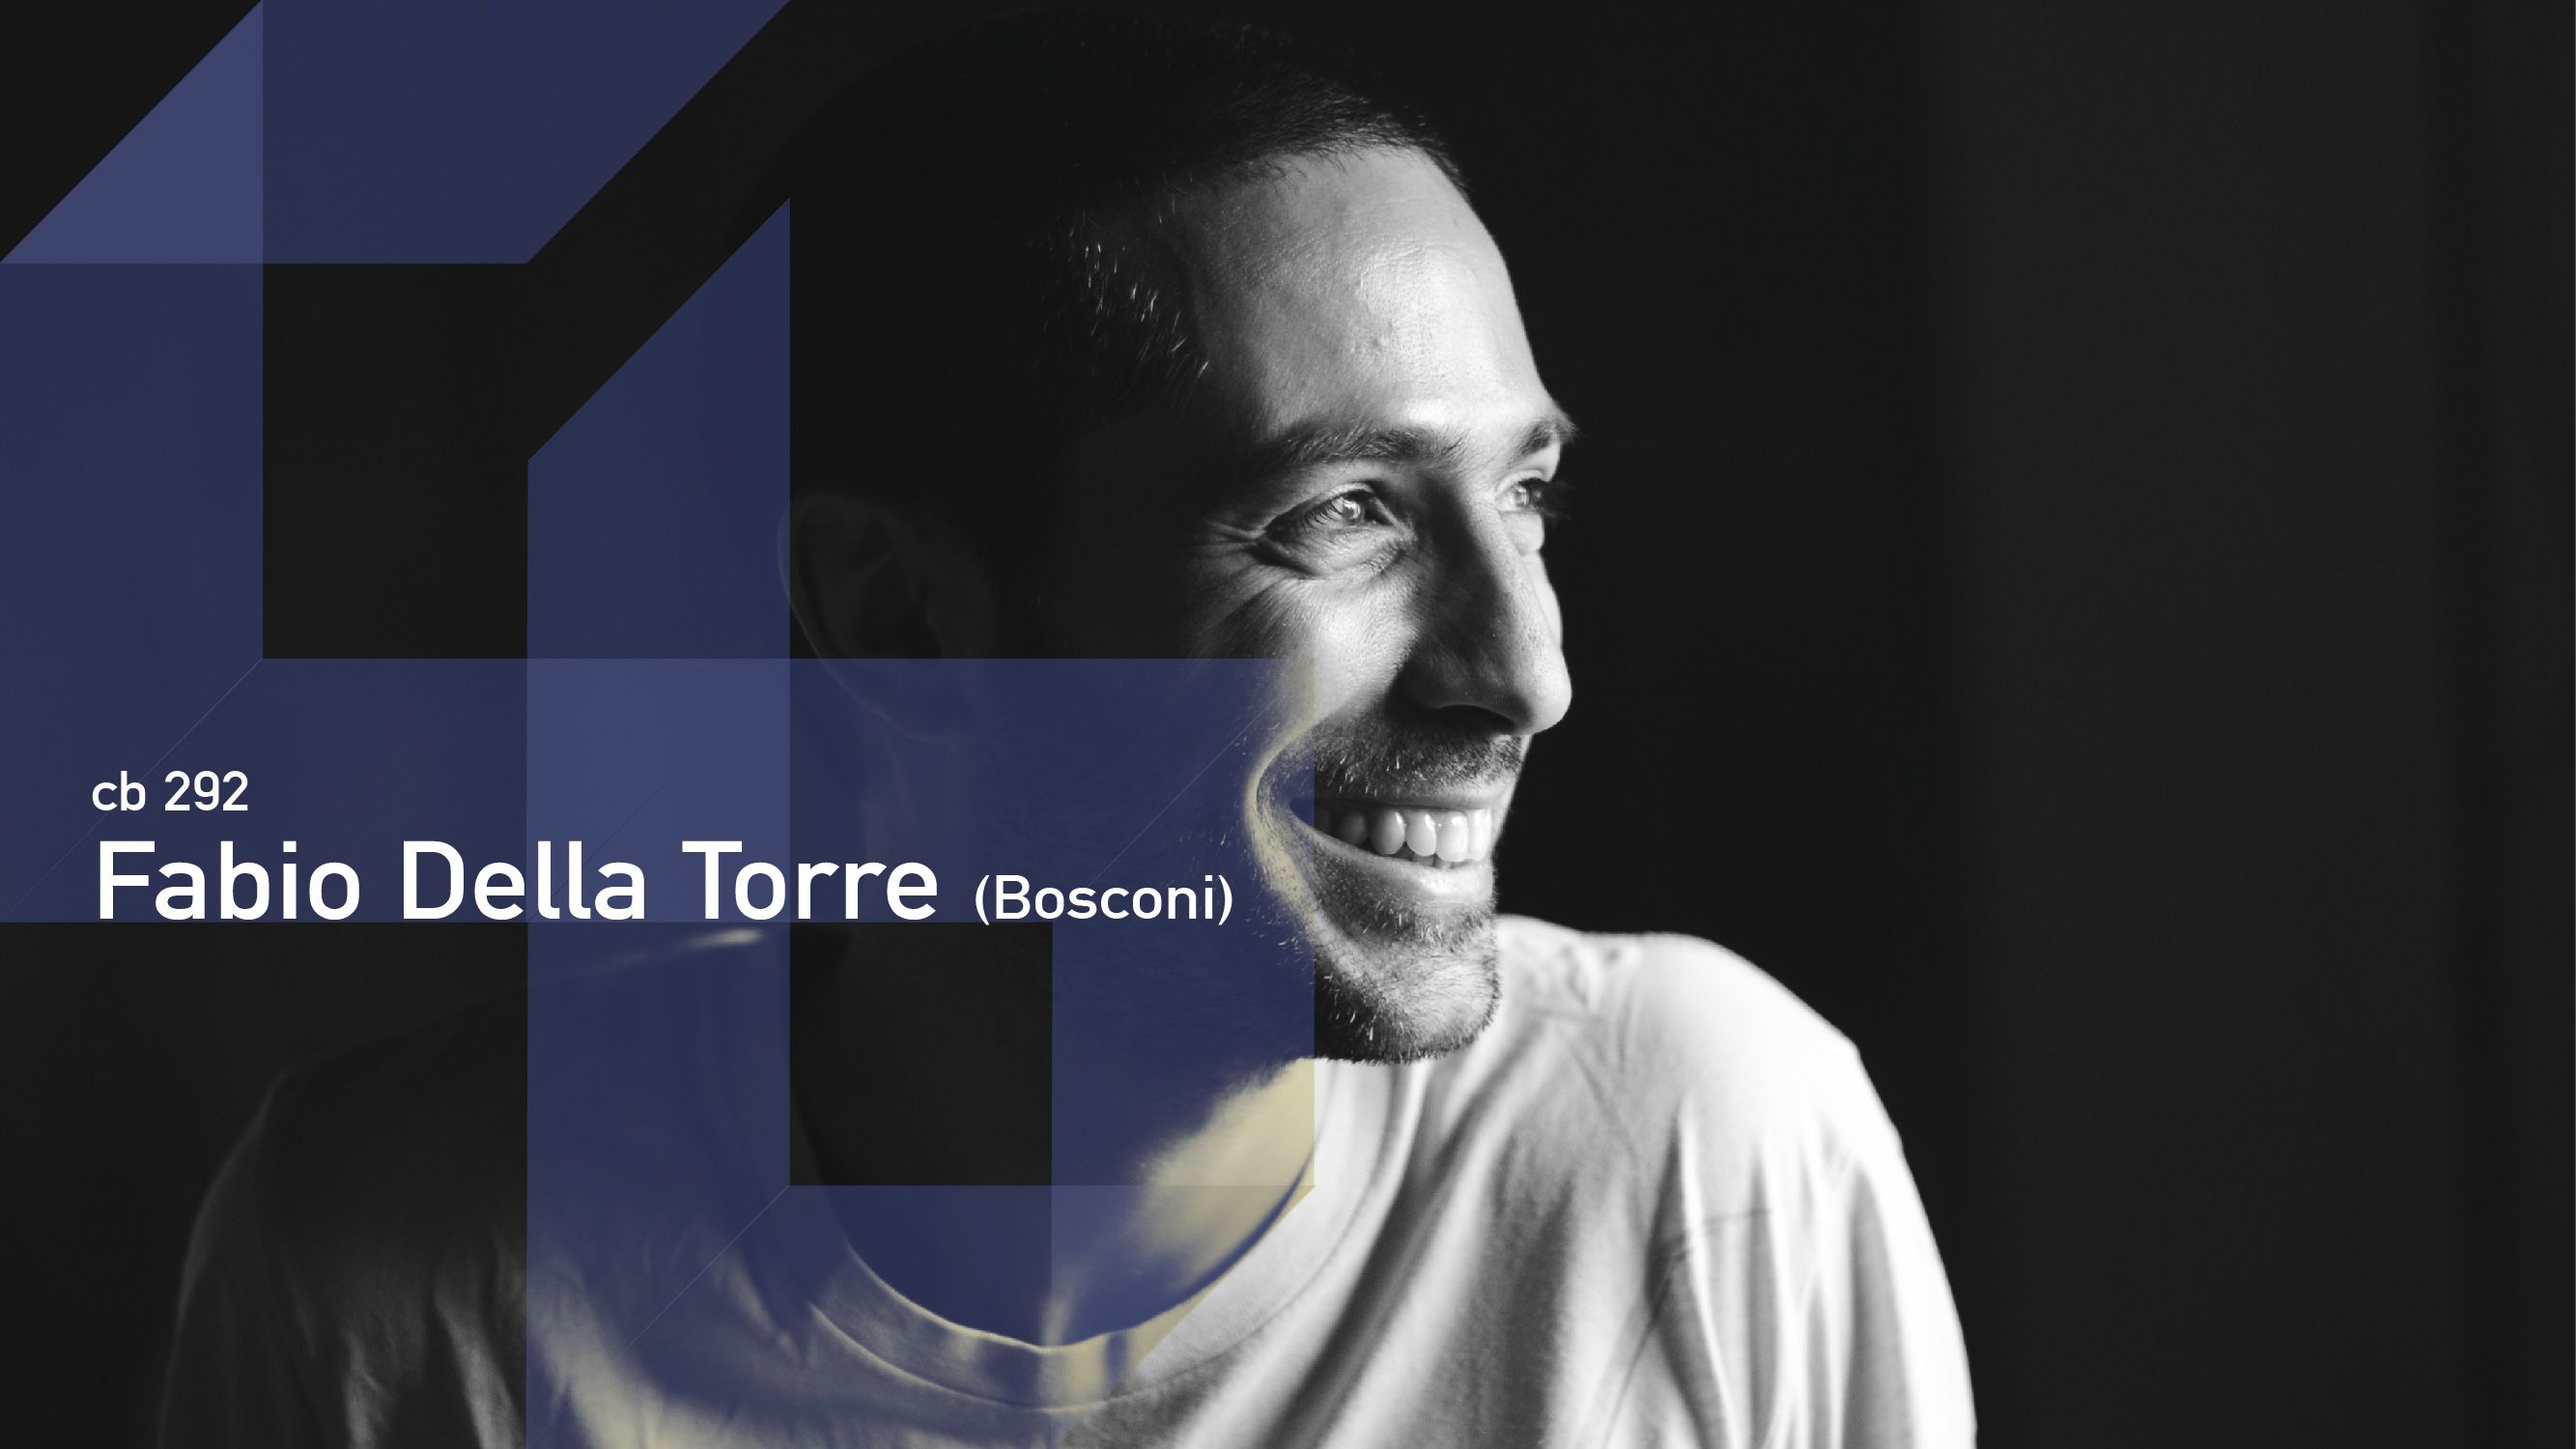 CB 292 - Fabio Della Torre